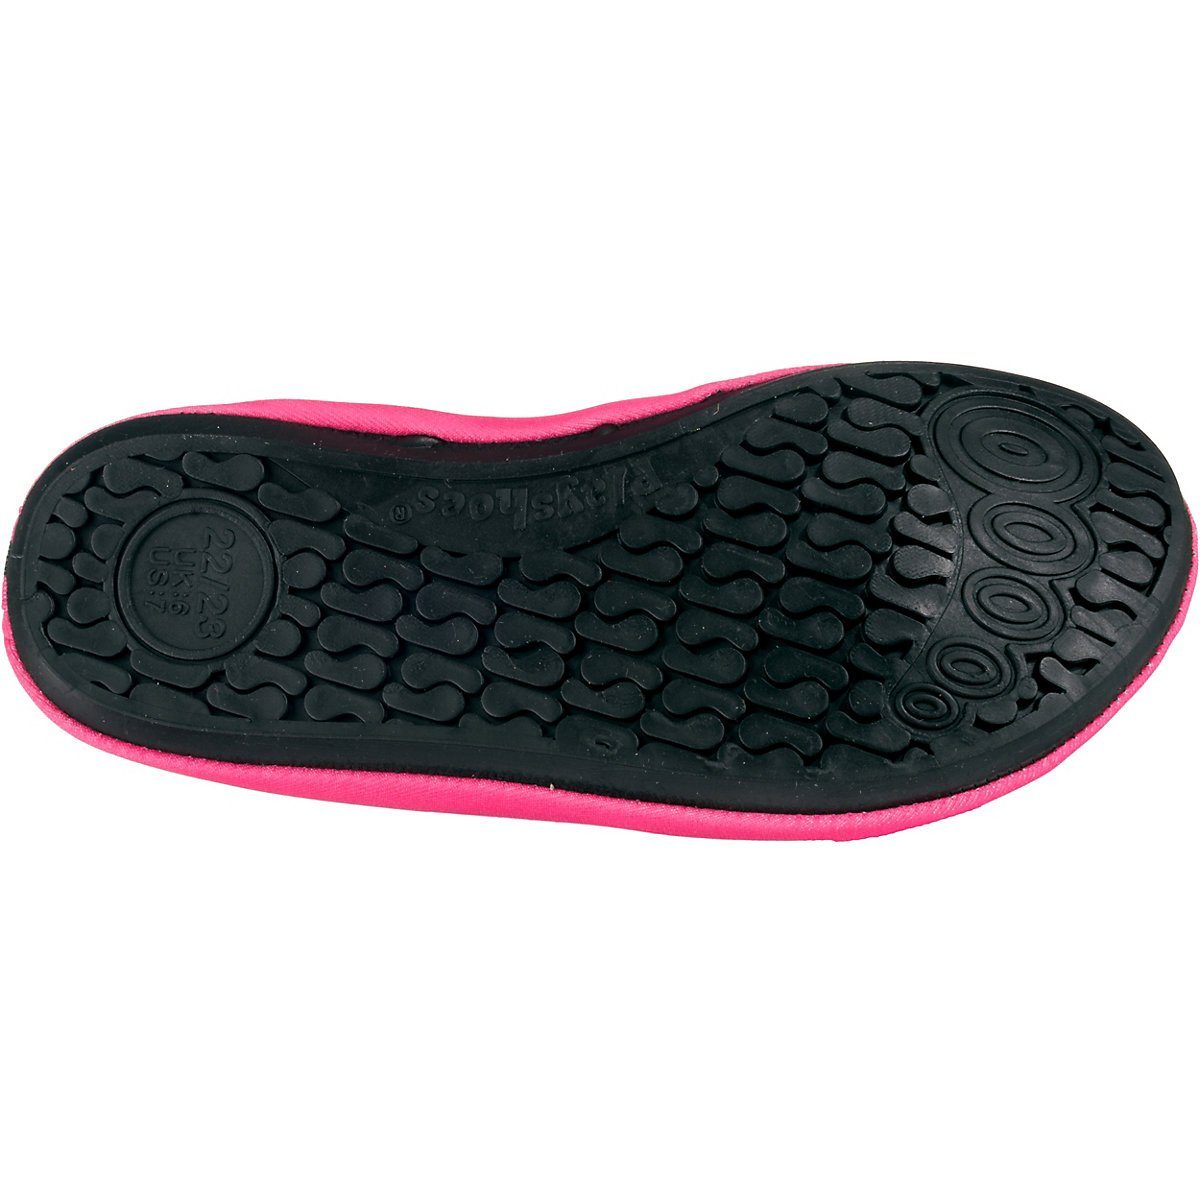 Schwimmschuhe, rutschhemmender Wasserschuhe Motiv flexible Passform, Badeschuhe rosa Meerjungfrau Badeschuh Playshoes Sohle mit Barfuß-Schuh